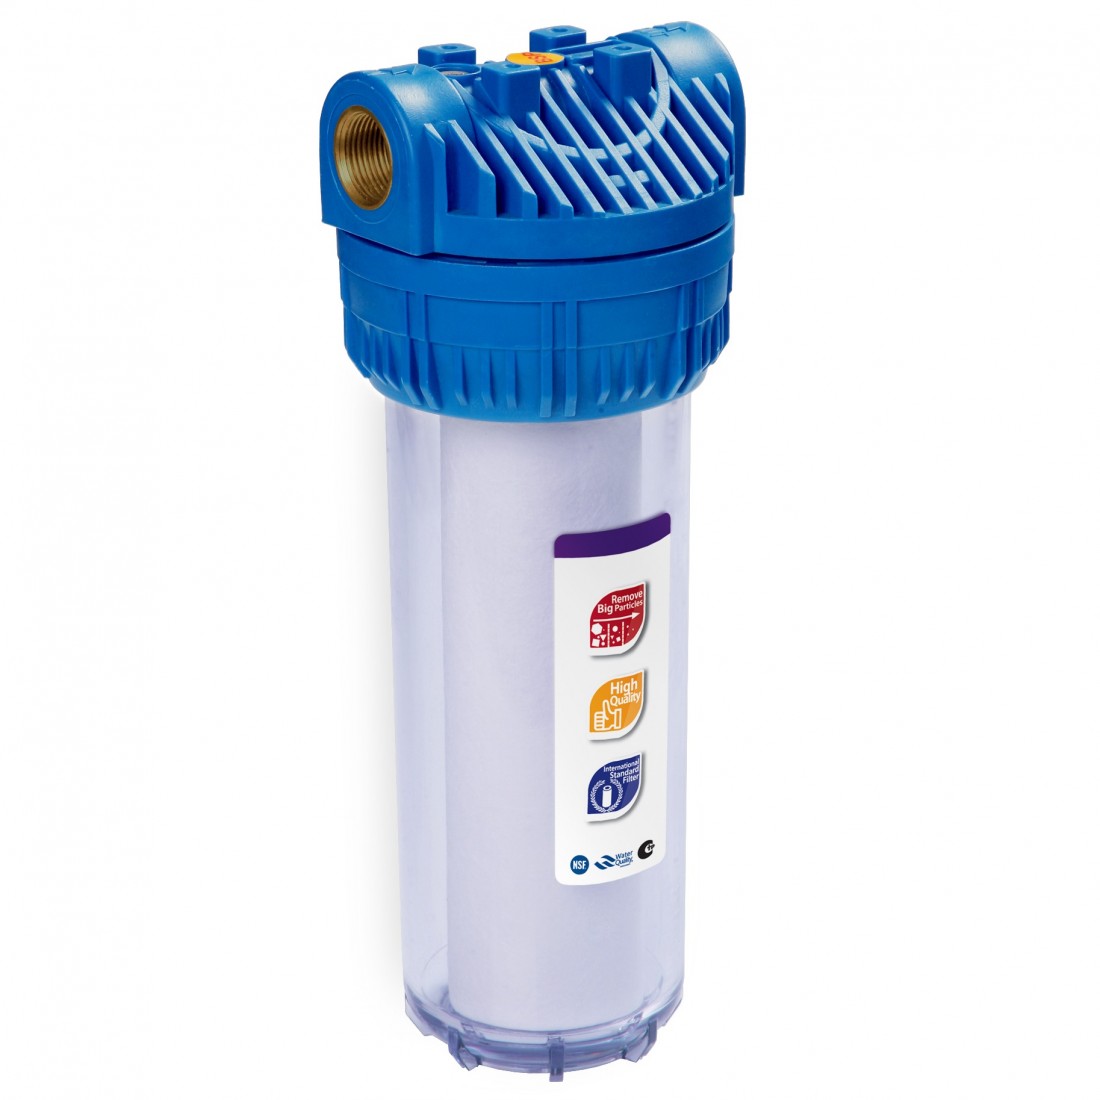 Фильтр для очистки воды спб. Фильтр магистральный RAIFIL ps897-bk1-PR-С. Корпус Aqua fp3 10" SL, 1/2". АБФ-10-12 магистральный фильтр. Фильтр магистральный для воды c889-b12-PR-BN RAIFIL.